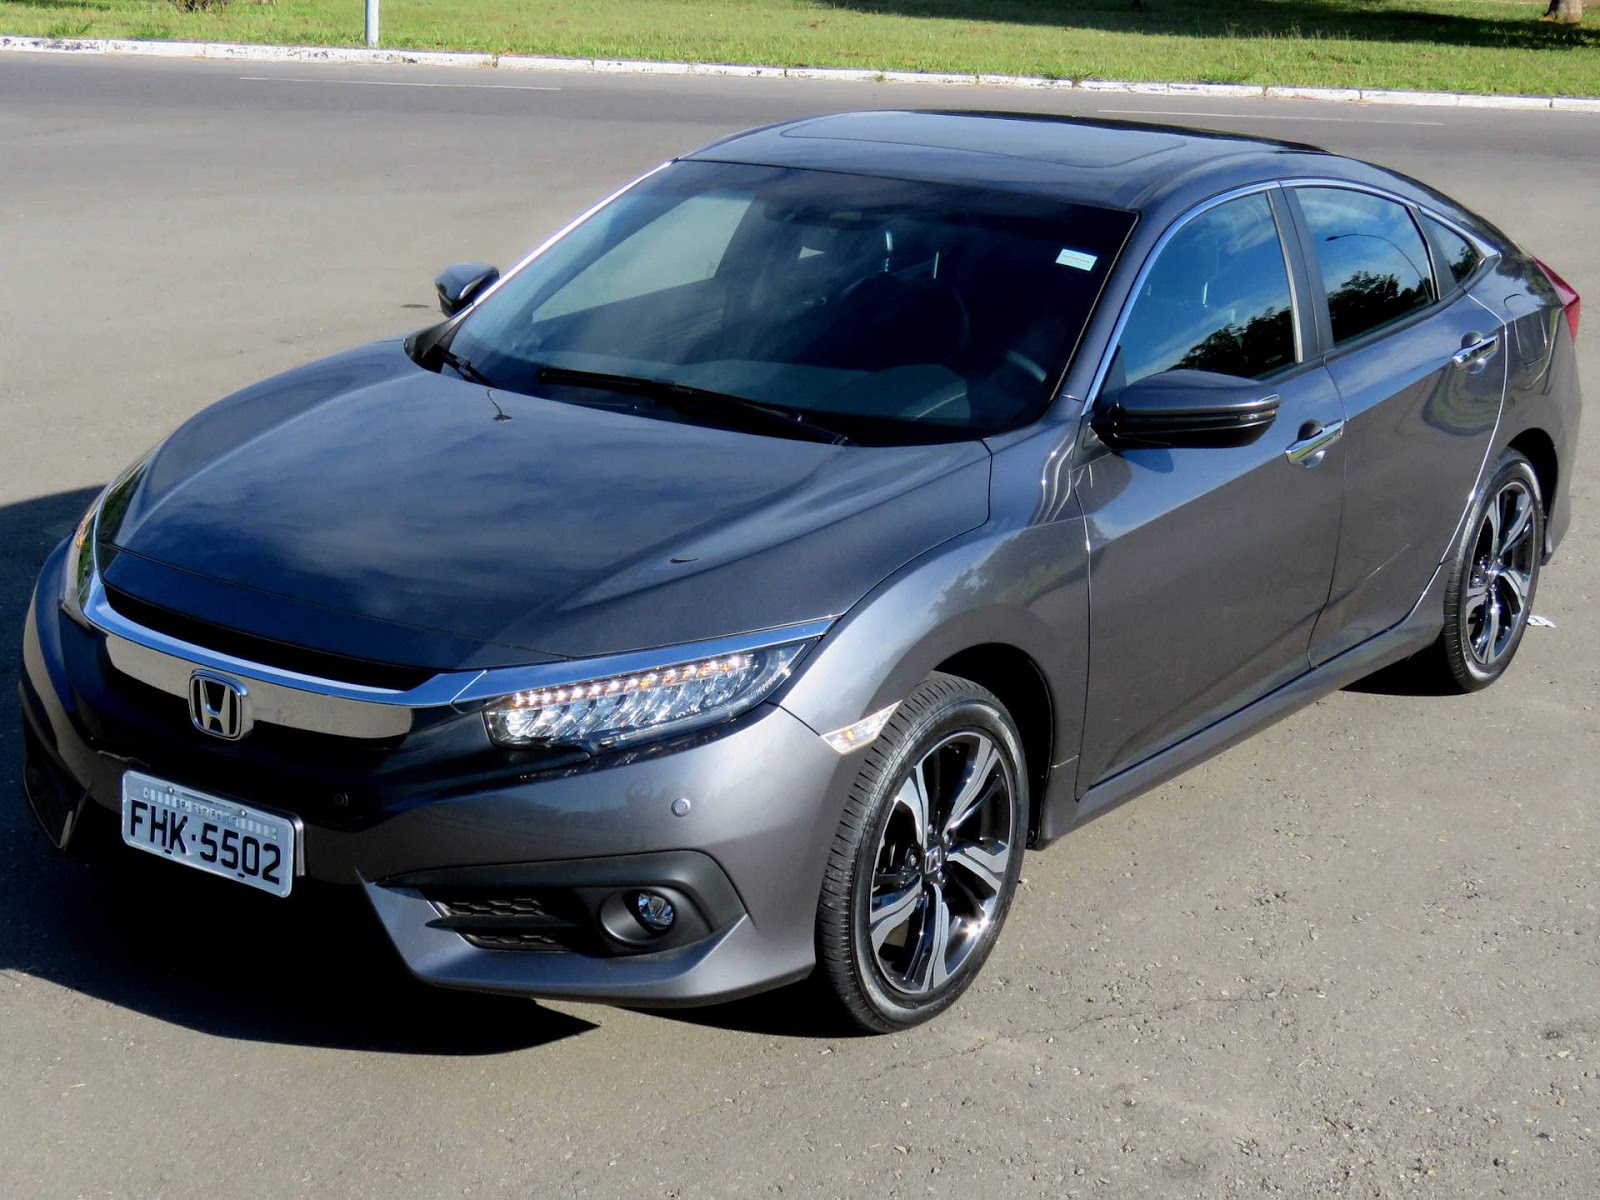 Novo Honda Civic 2017 Touring: preço, desempenho - vídeo | CAR.BLOG.BR